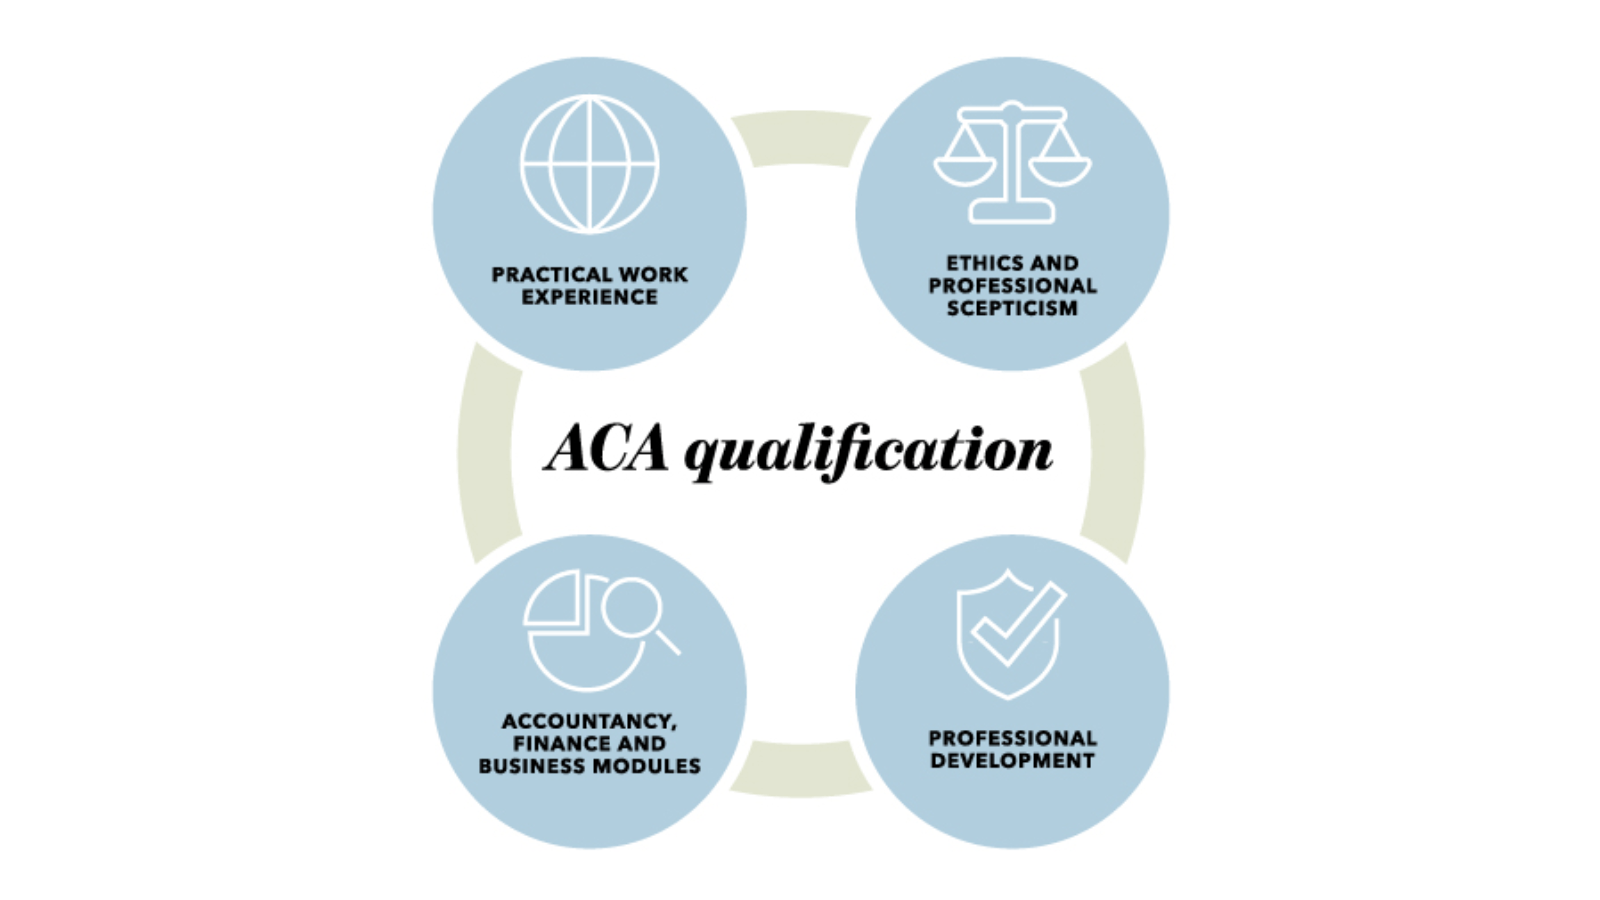 ACA qualification